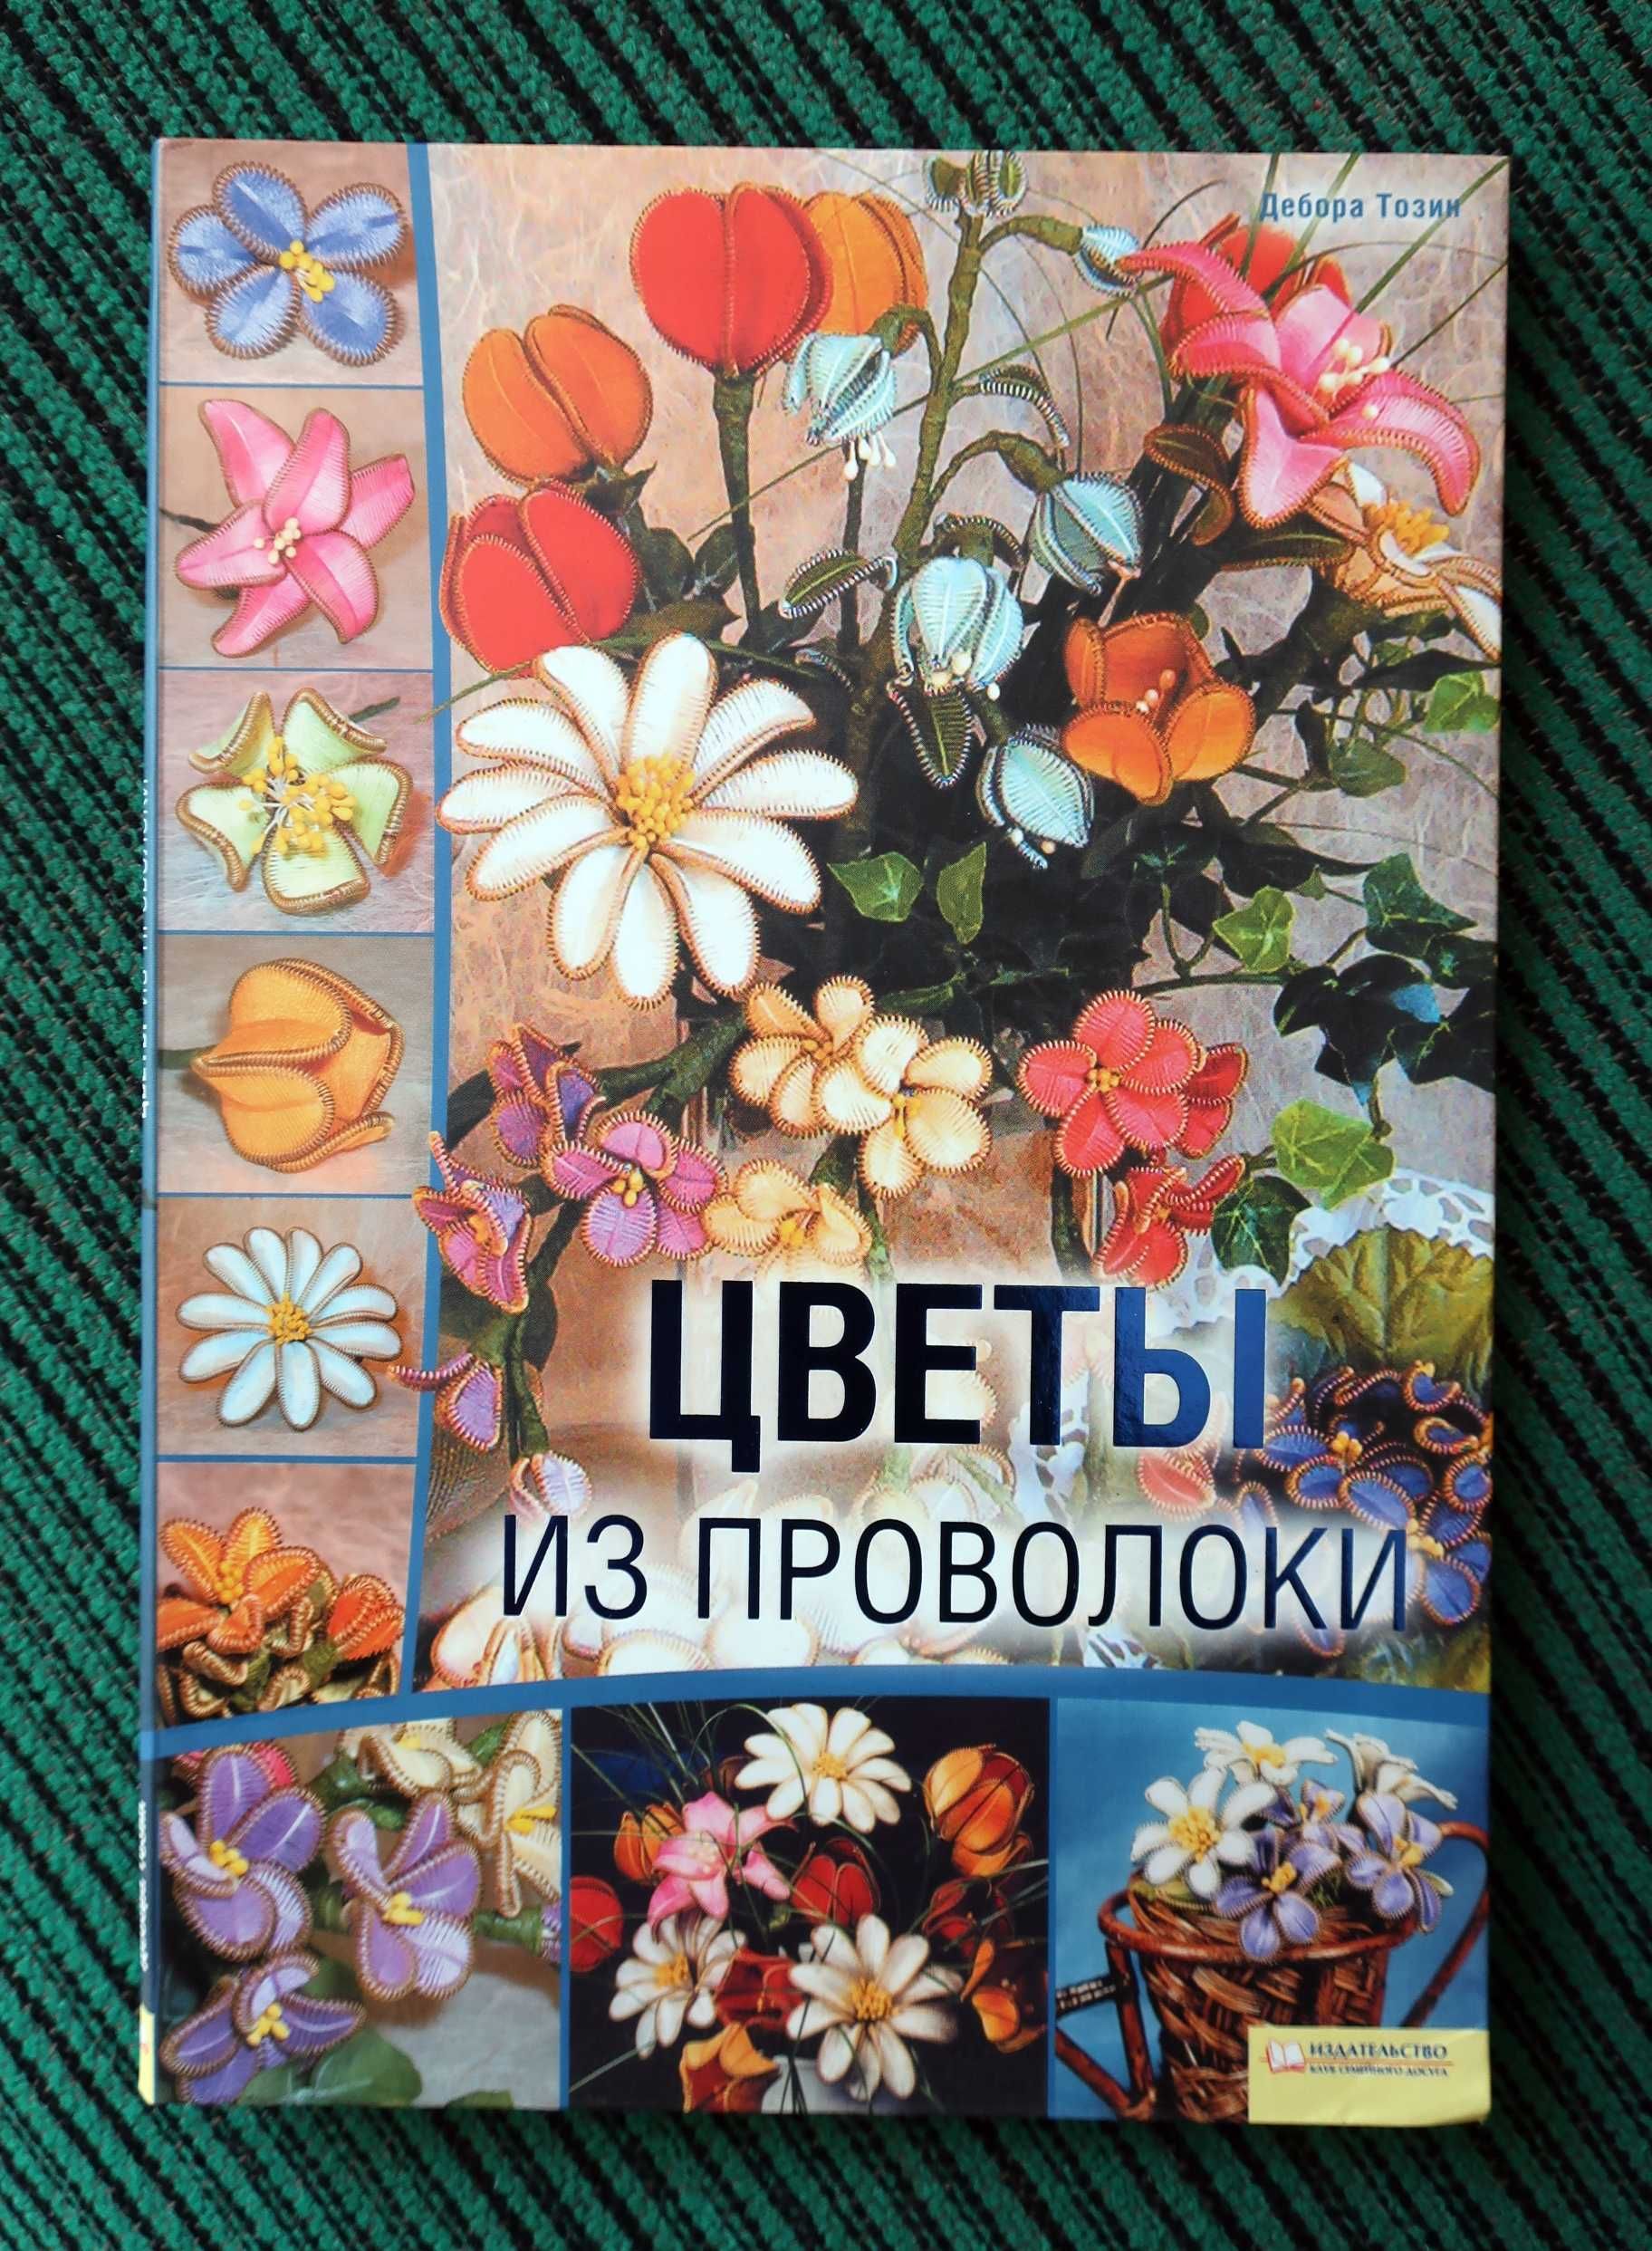 - Квіти з проволоки - Класна книга для рукоділля та творчості! -